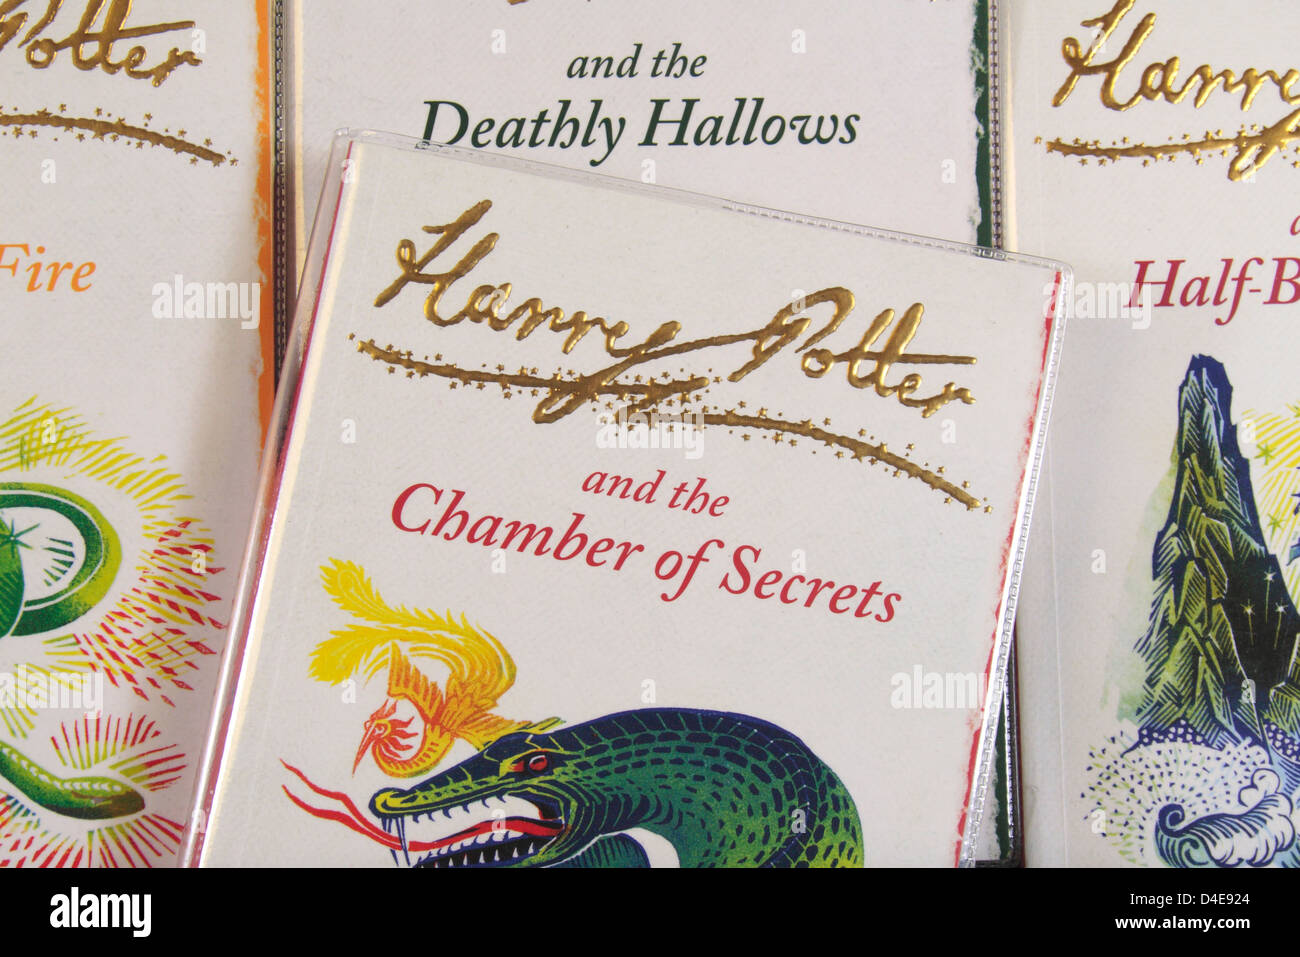 La couverture du livre "Harry Potter et la Chambre des Secrets' par JK Rowling assis sur d'autres livres de la série. Banque D'Images